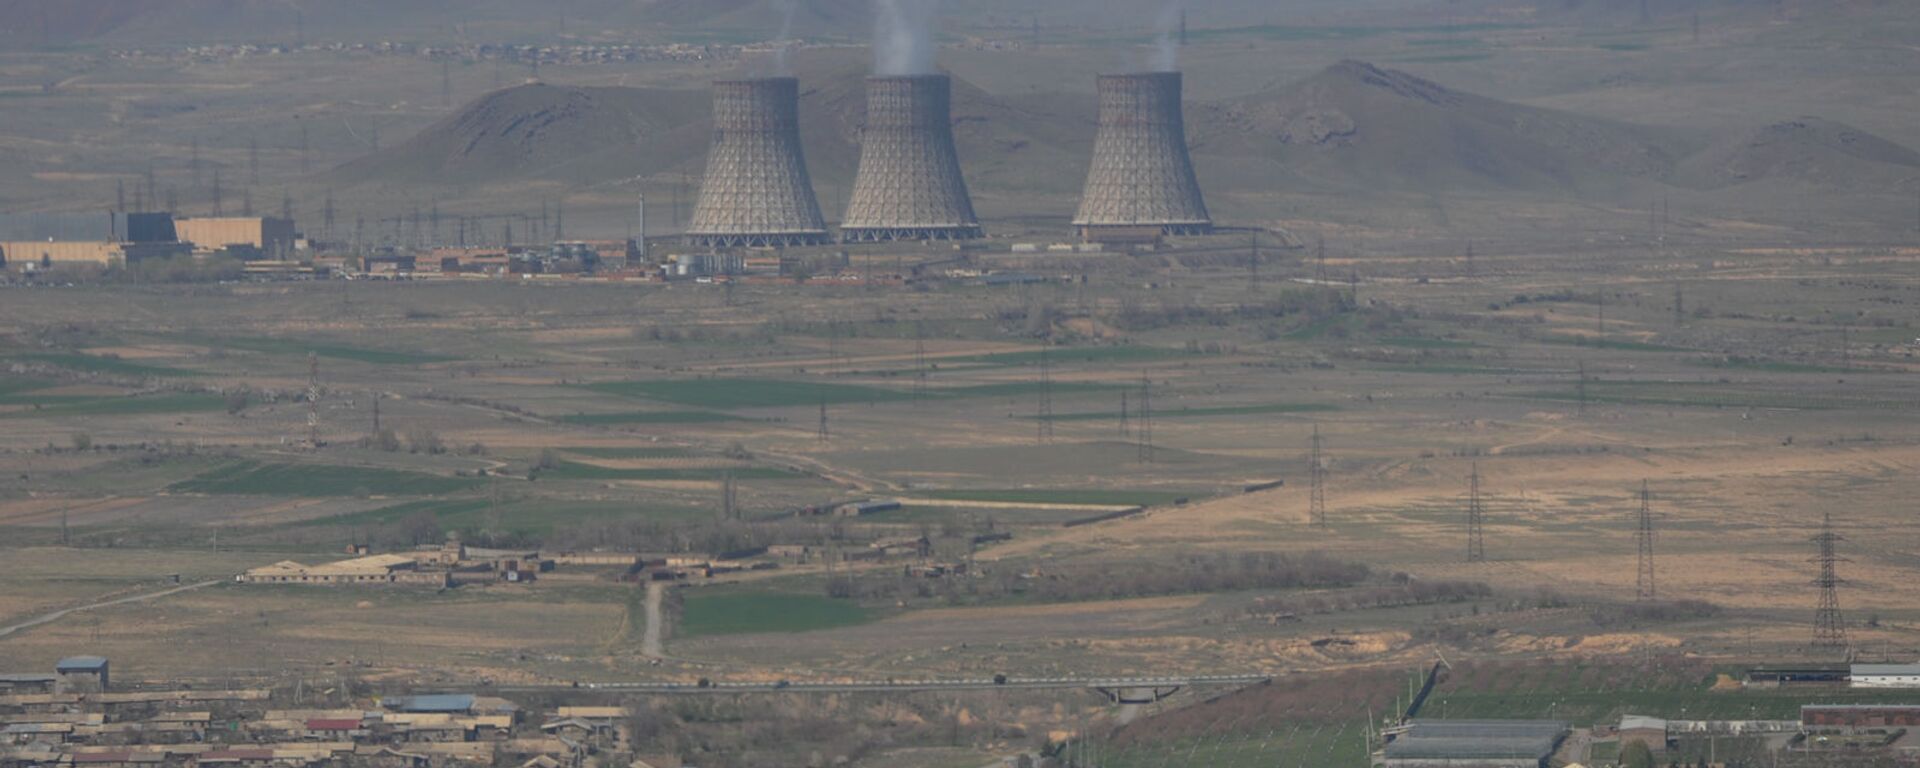 Армянская атомная электростанция - Sputnik Արմենիա, 1920, 22.07.2021